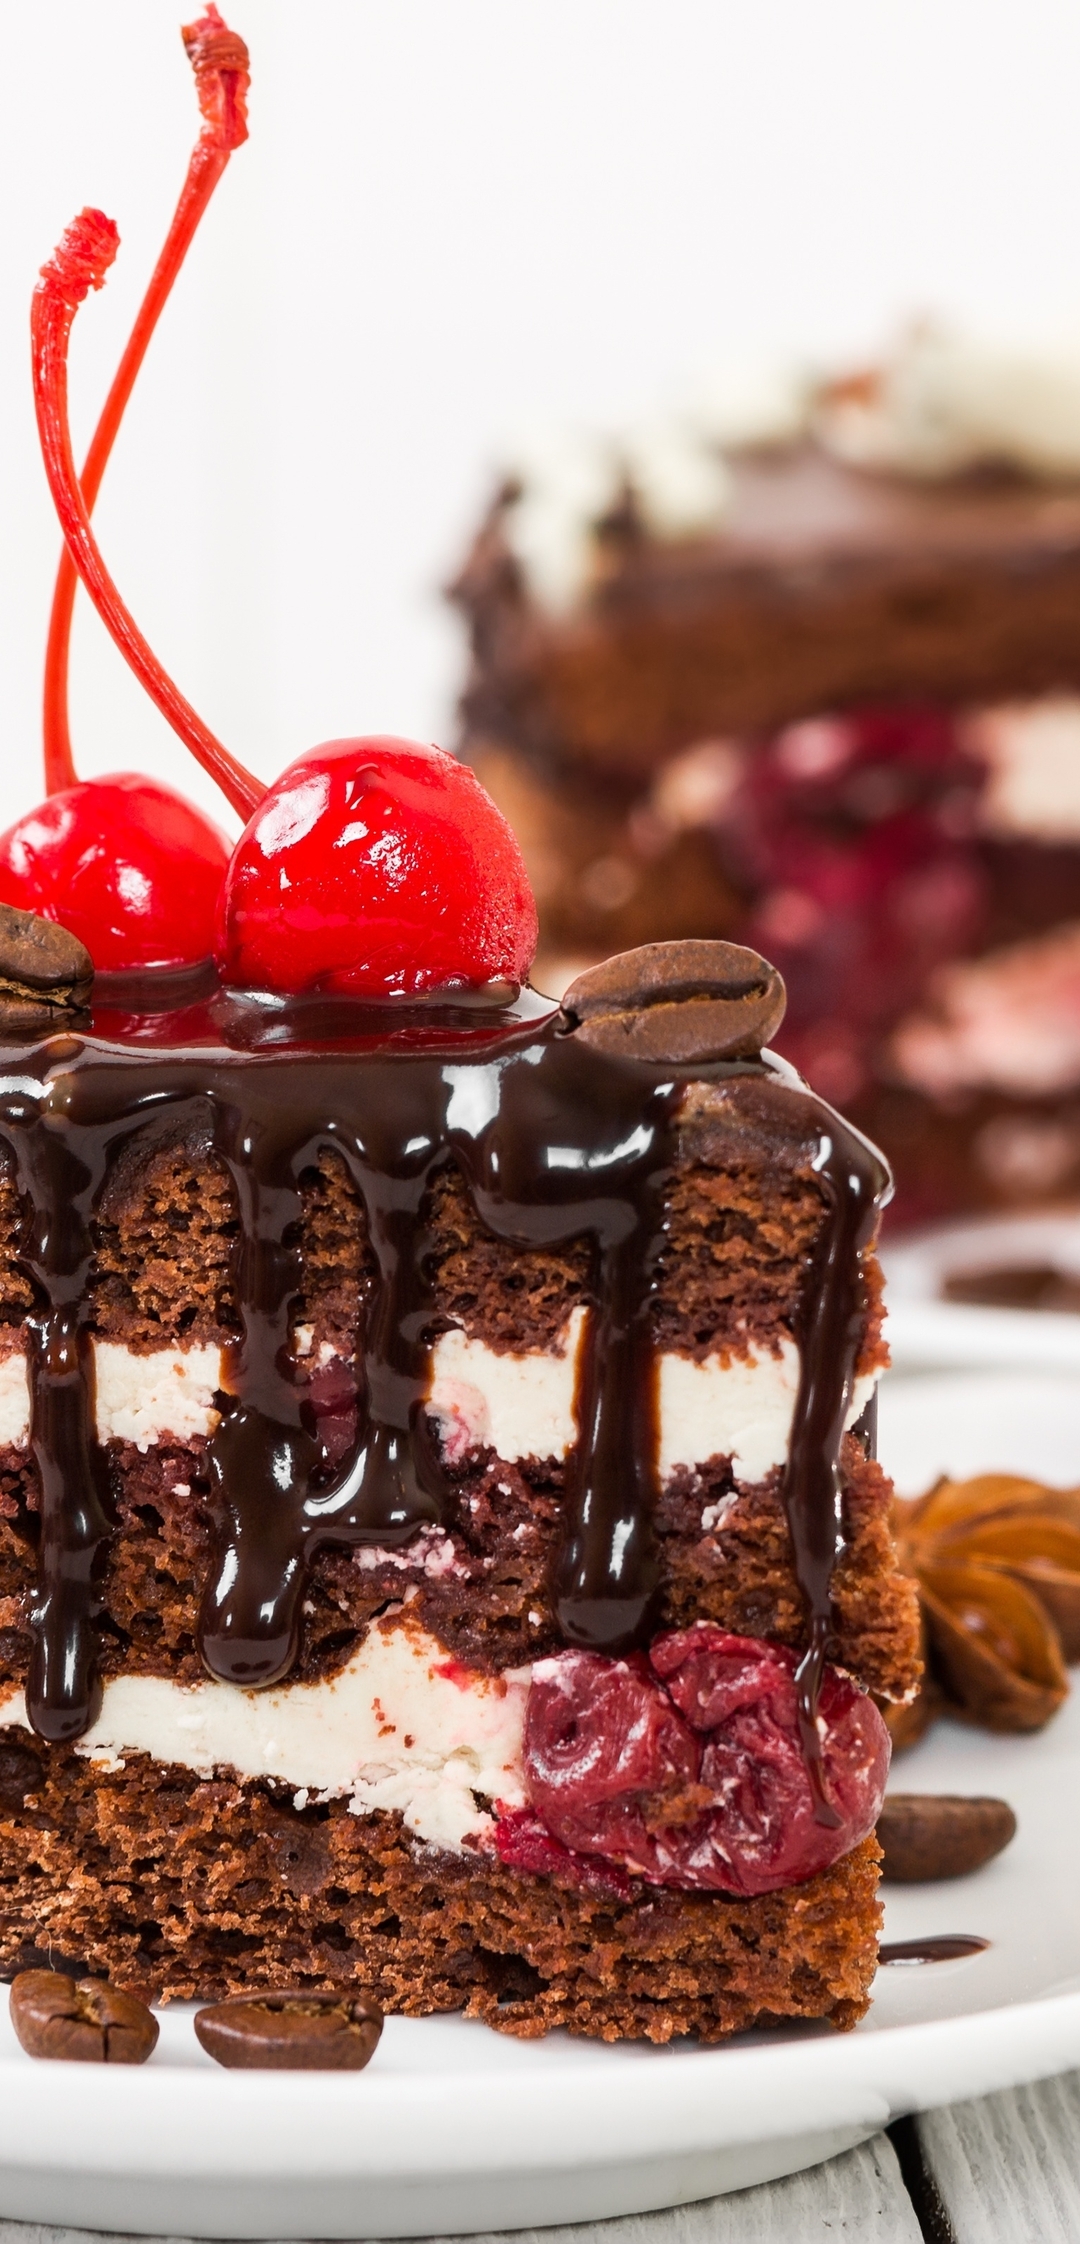 Картинка: Ломтик, торт, вишня, десерт, шоколад